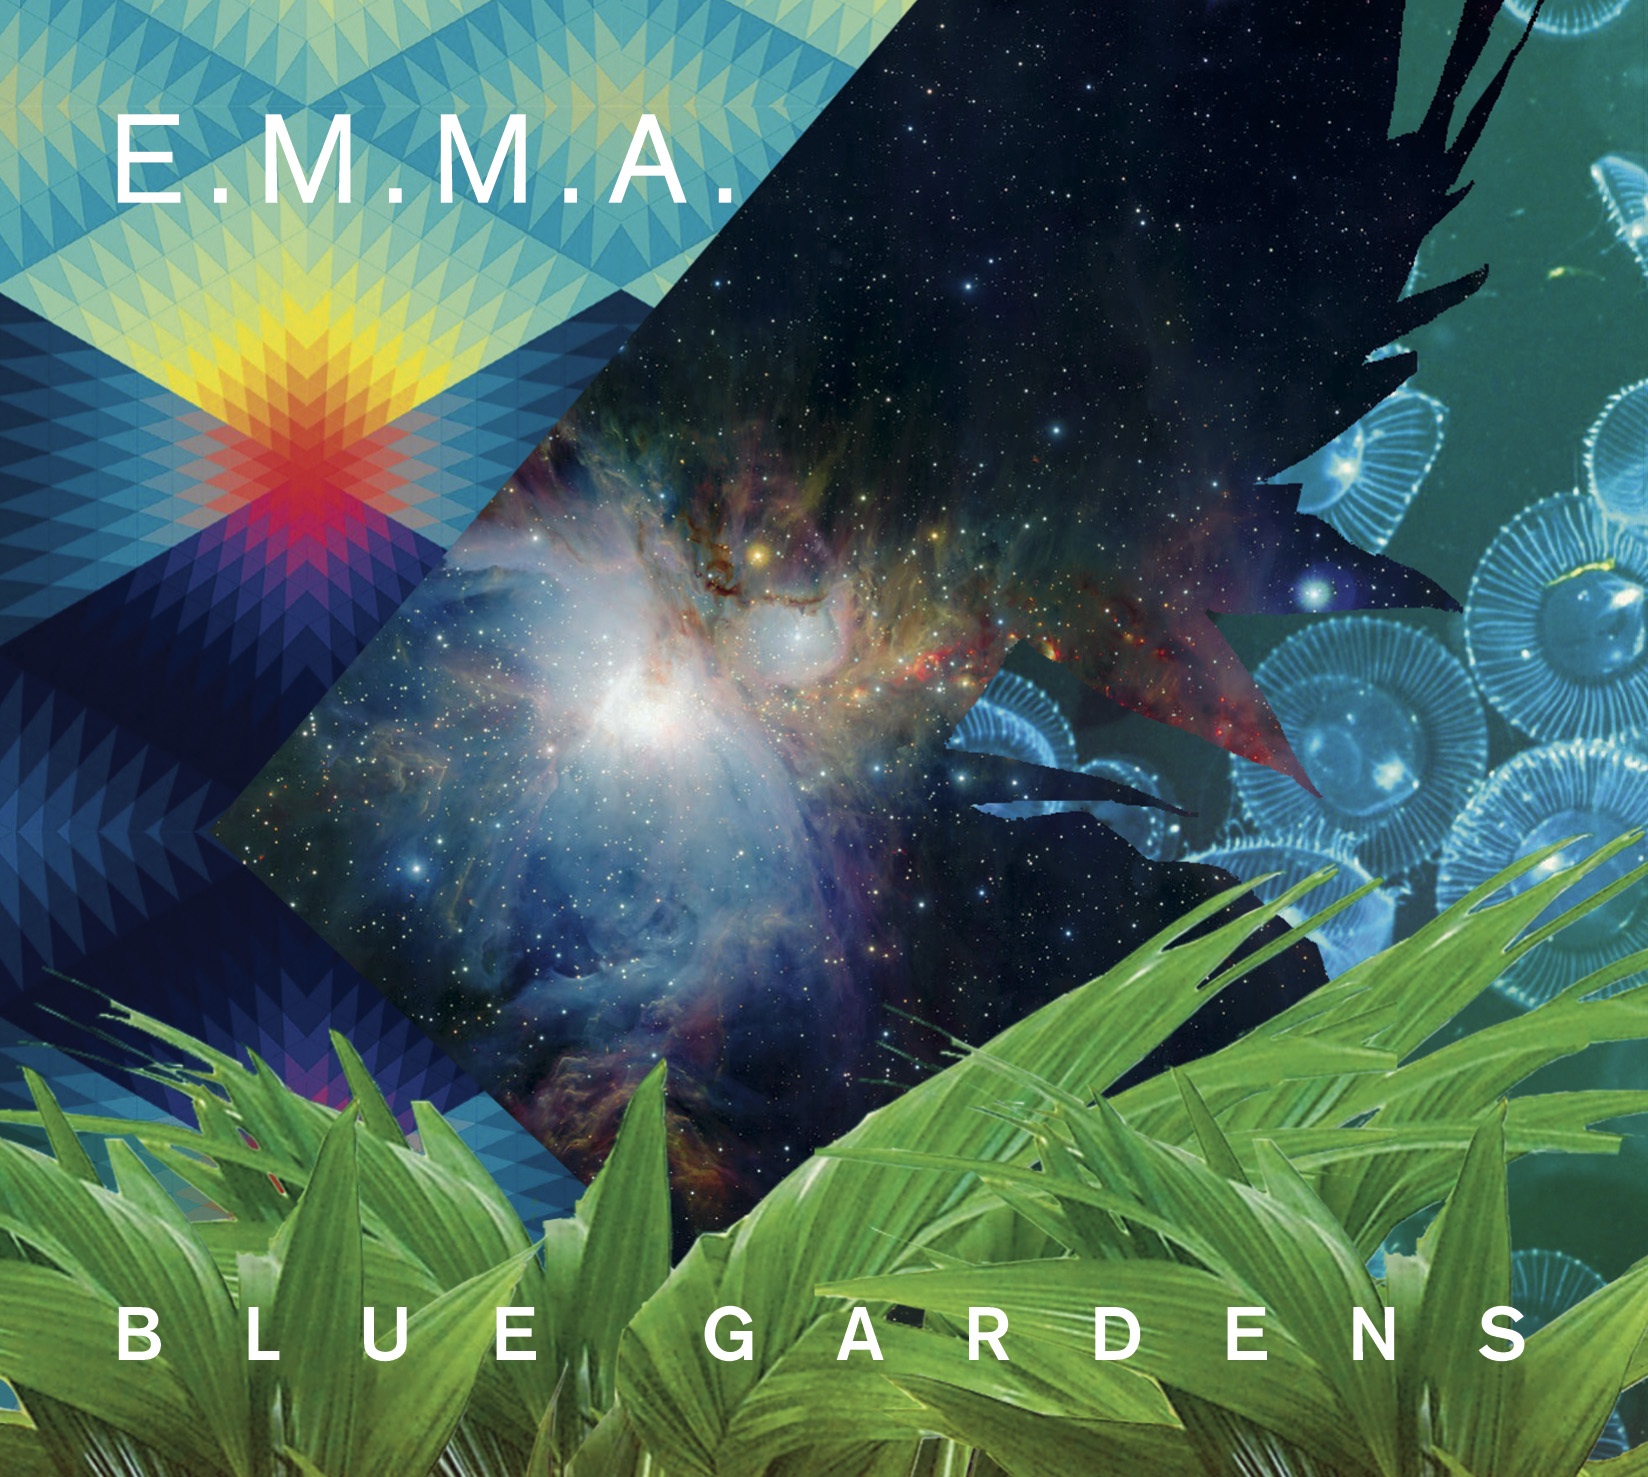 E.m.m.a - Blue Gardens